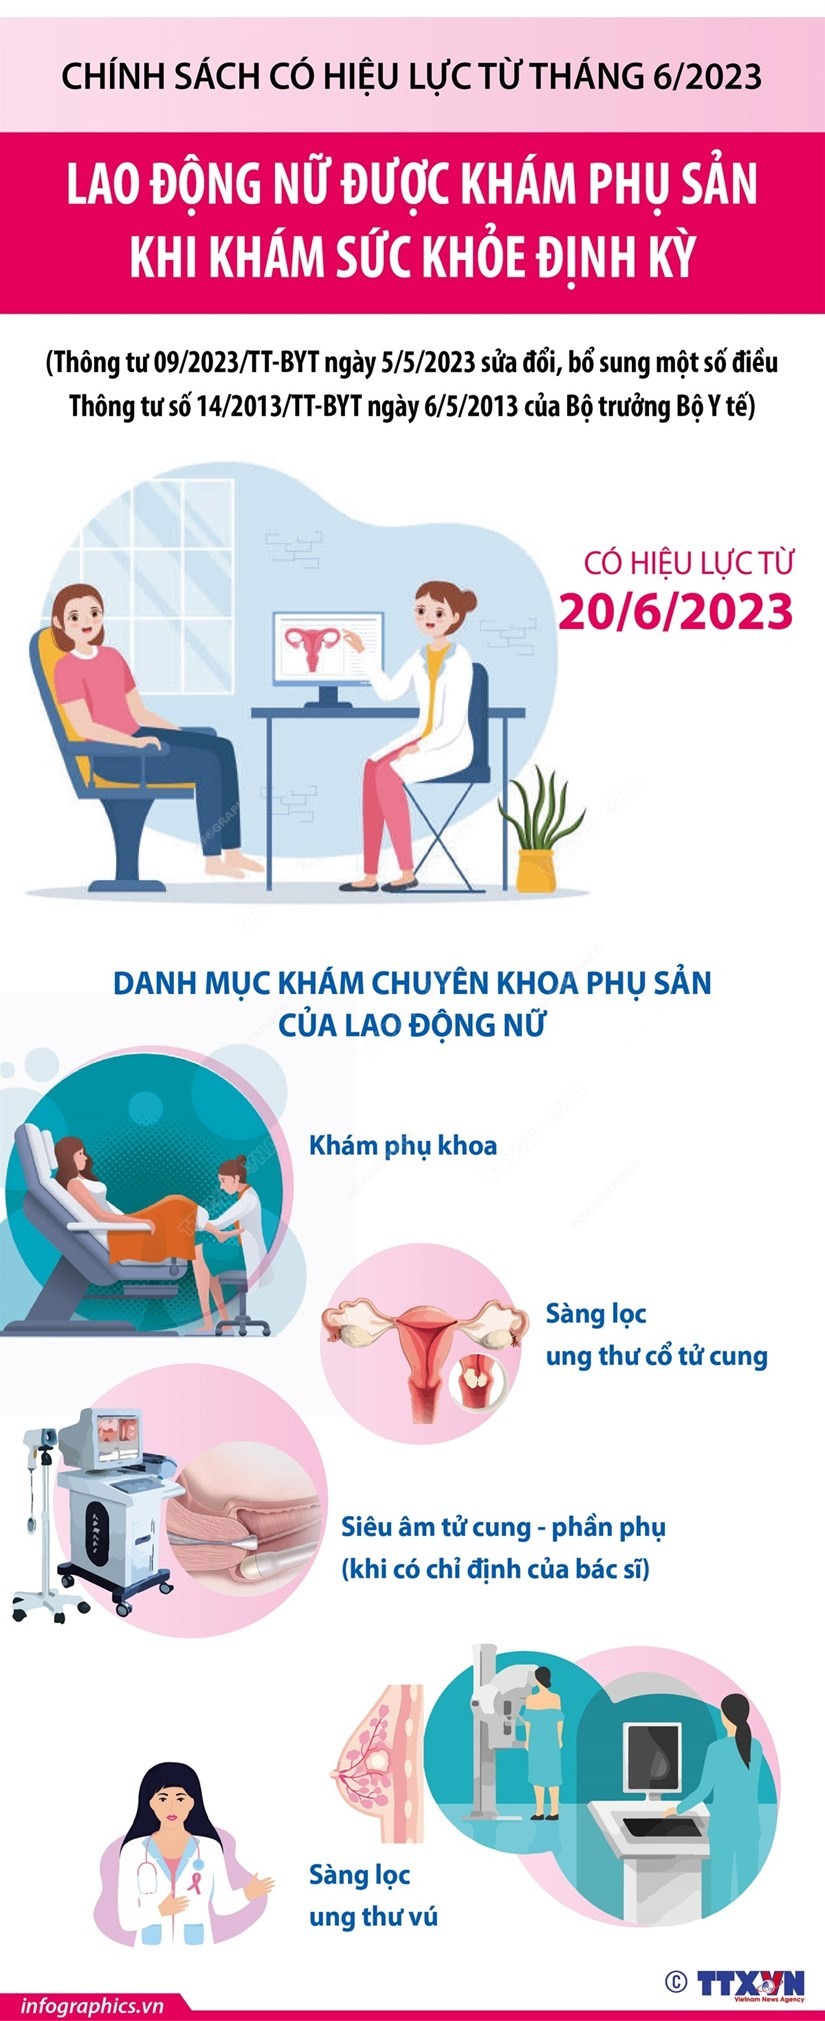 Từ ngày 20/6/2023, lao động nữ được khám phụ sản khi khám sức khỏe định kỳ